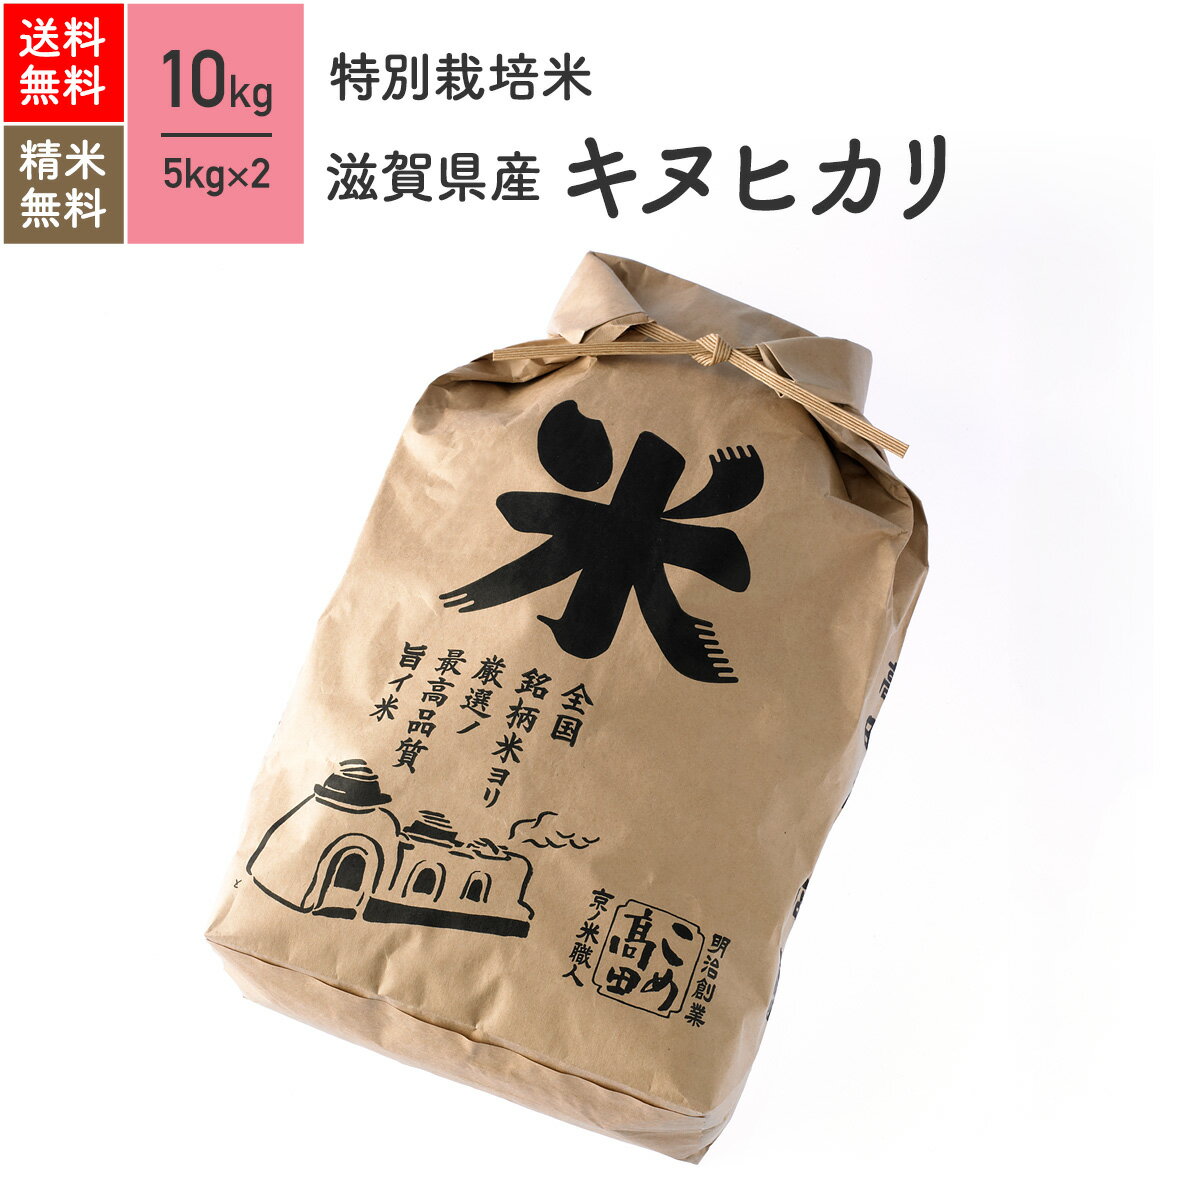 新米 米 10kg キヌヒカリ 滋賀県産 特別栽培米 令和元年産 送料無料お米 分つき精米 玄米